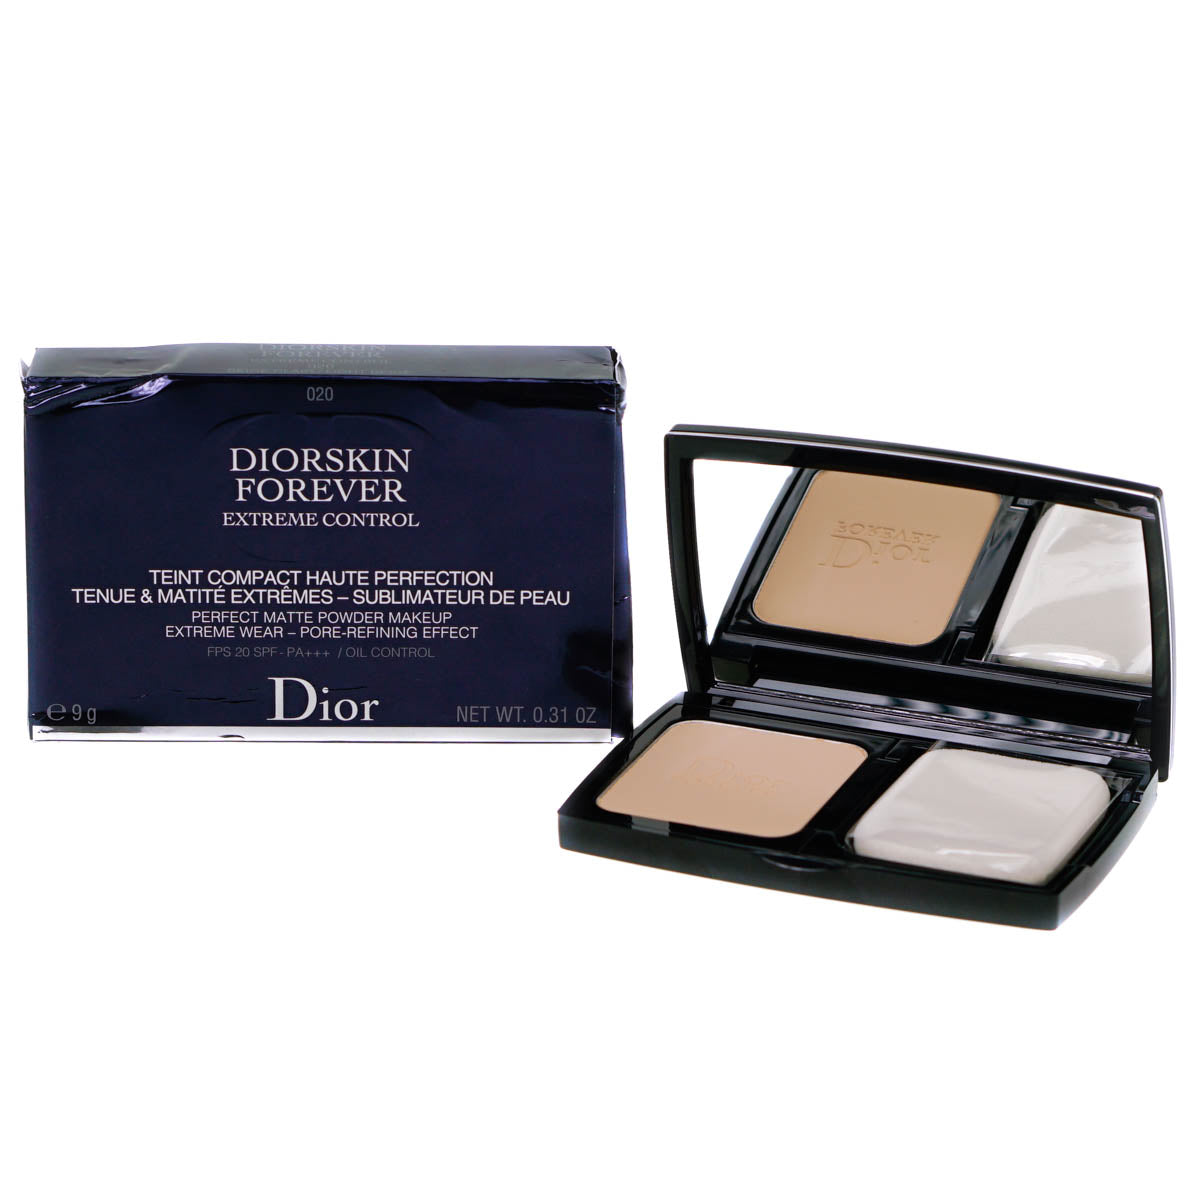 Dior Diorskin Powder Foundation 020 Light Beige